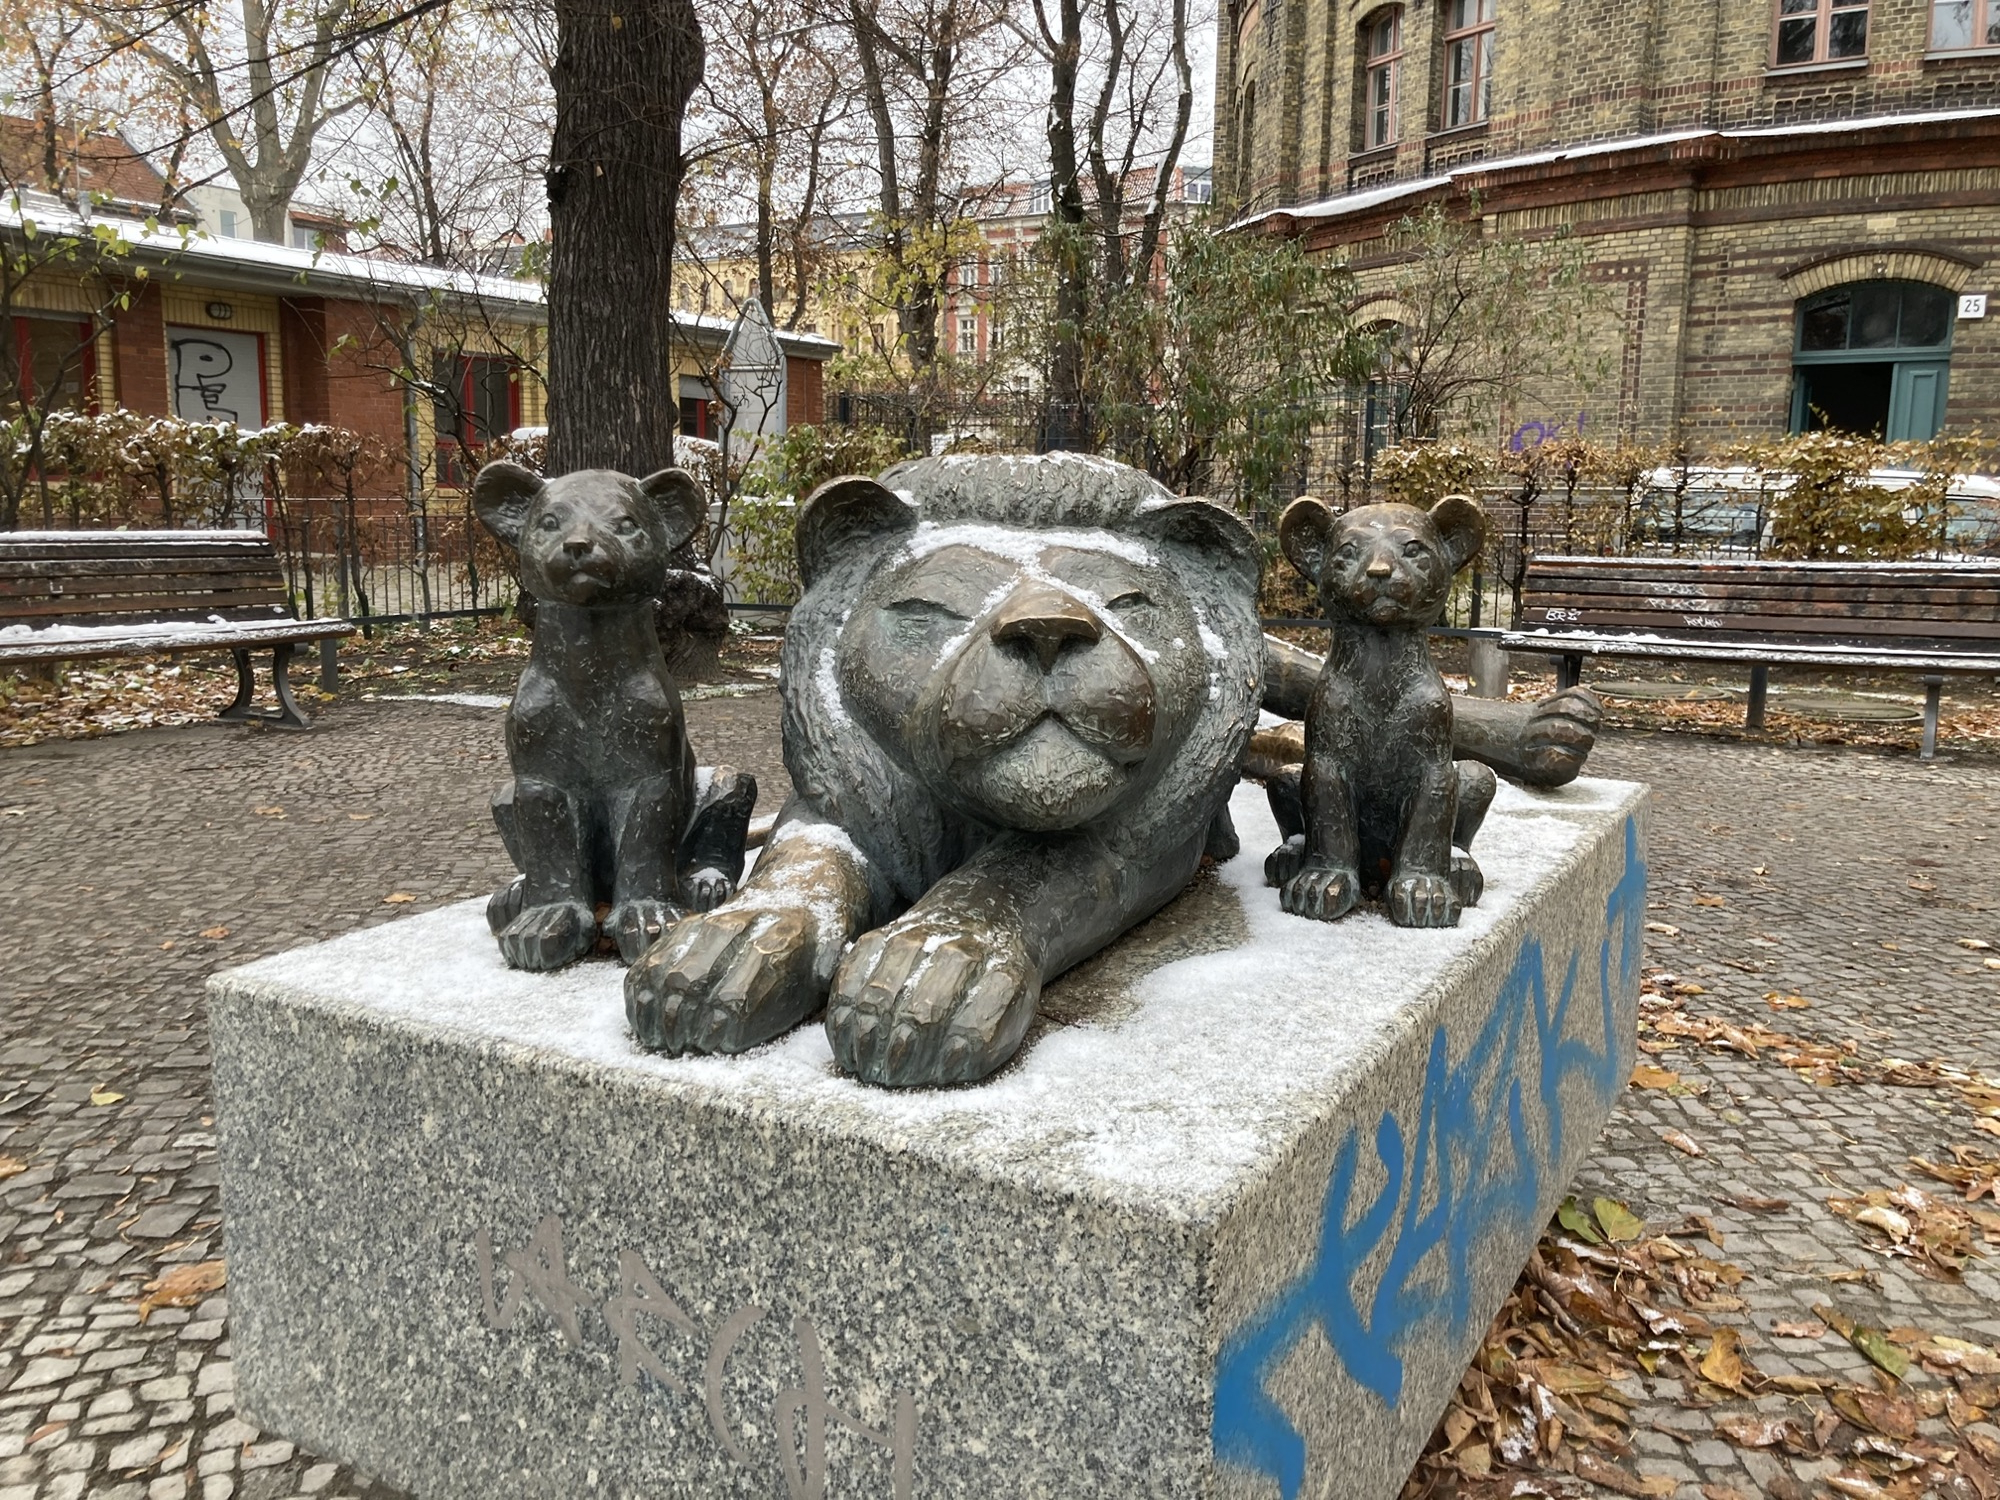 Metall-Skulptur eines auf der Seite liegenden, erwachsenen Löwen, flankiert von zwei sitzenden Löwenkindern, die Skulptur ist von einem dünnen Schneefilm bedeckt